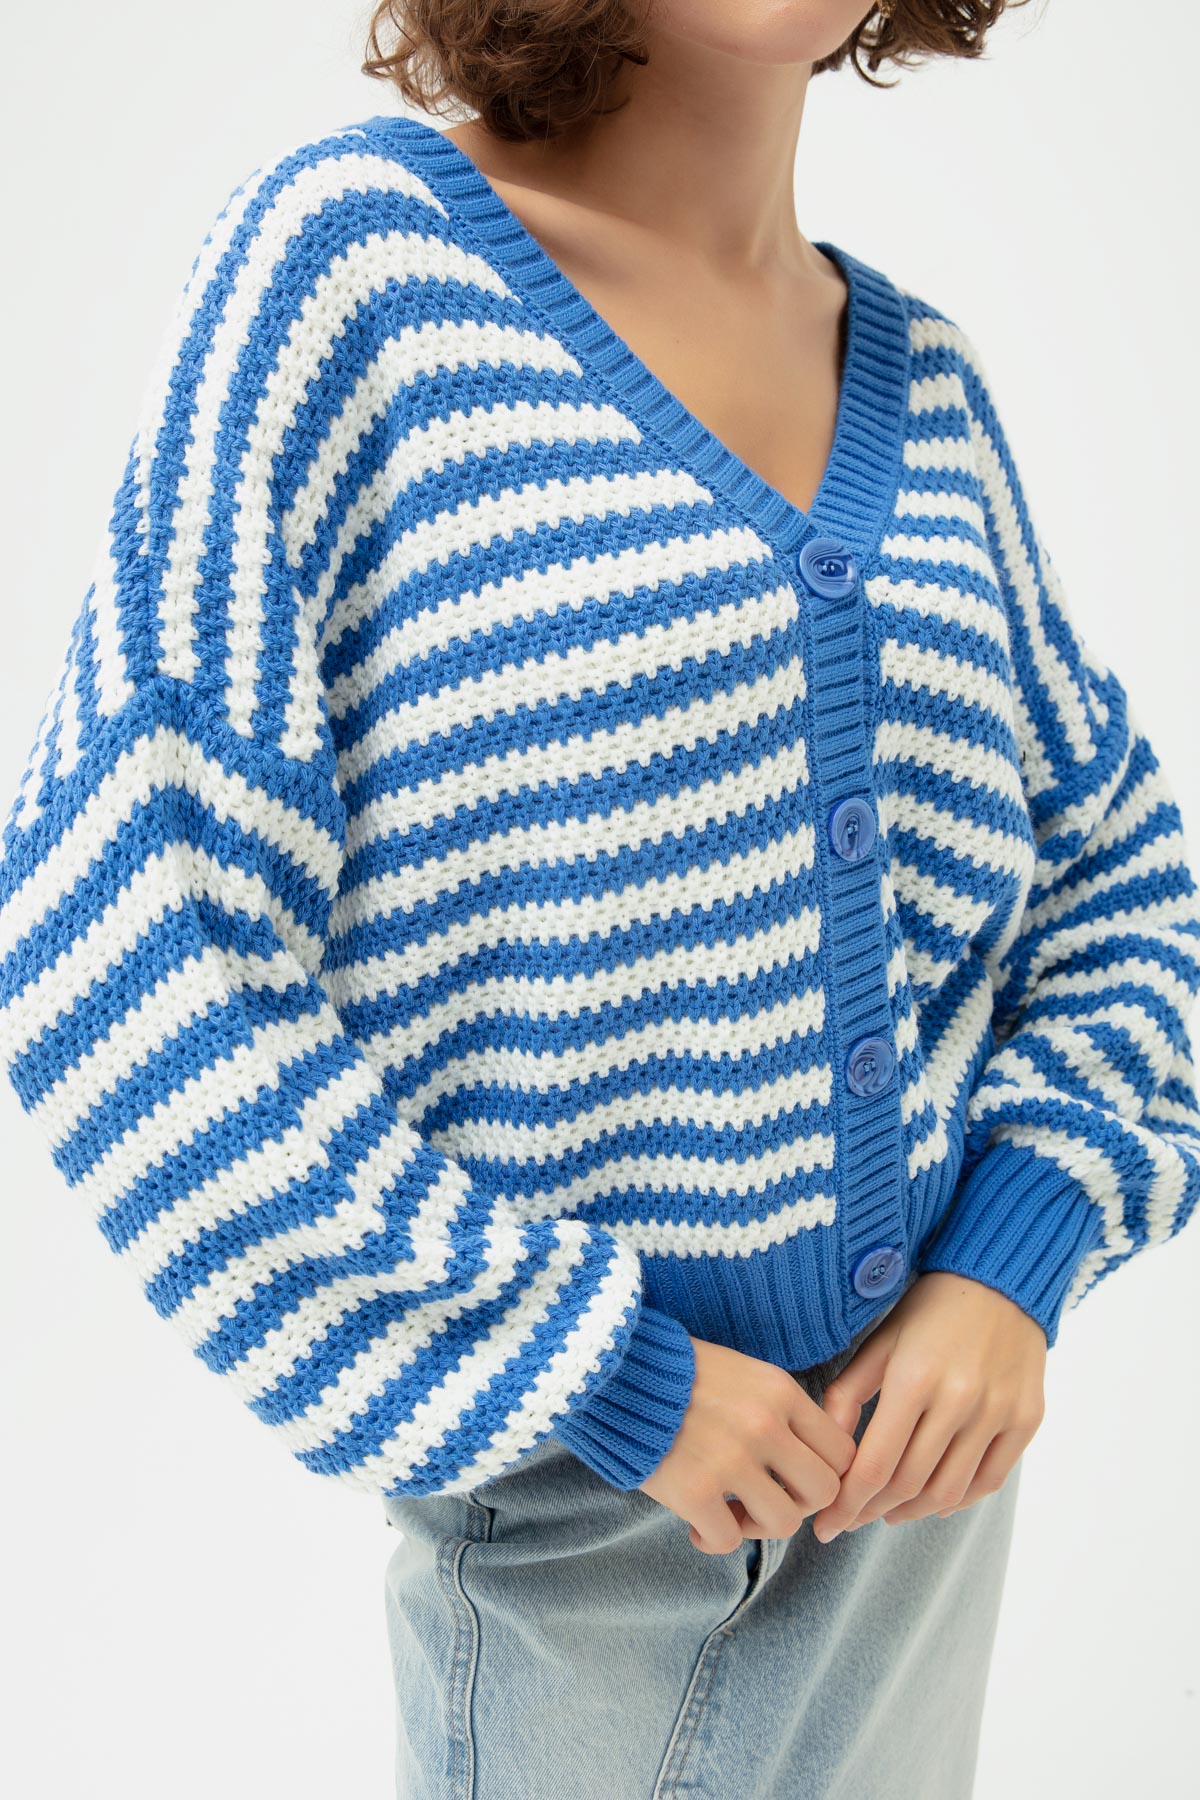 Women's Blue Striped Knitwear Cardigan